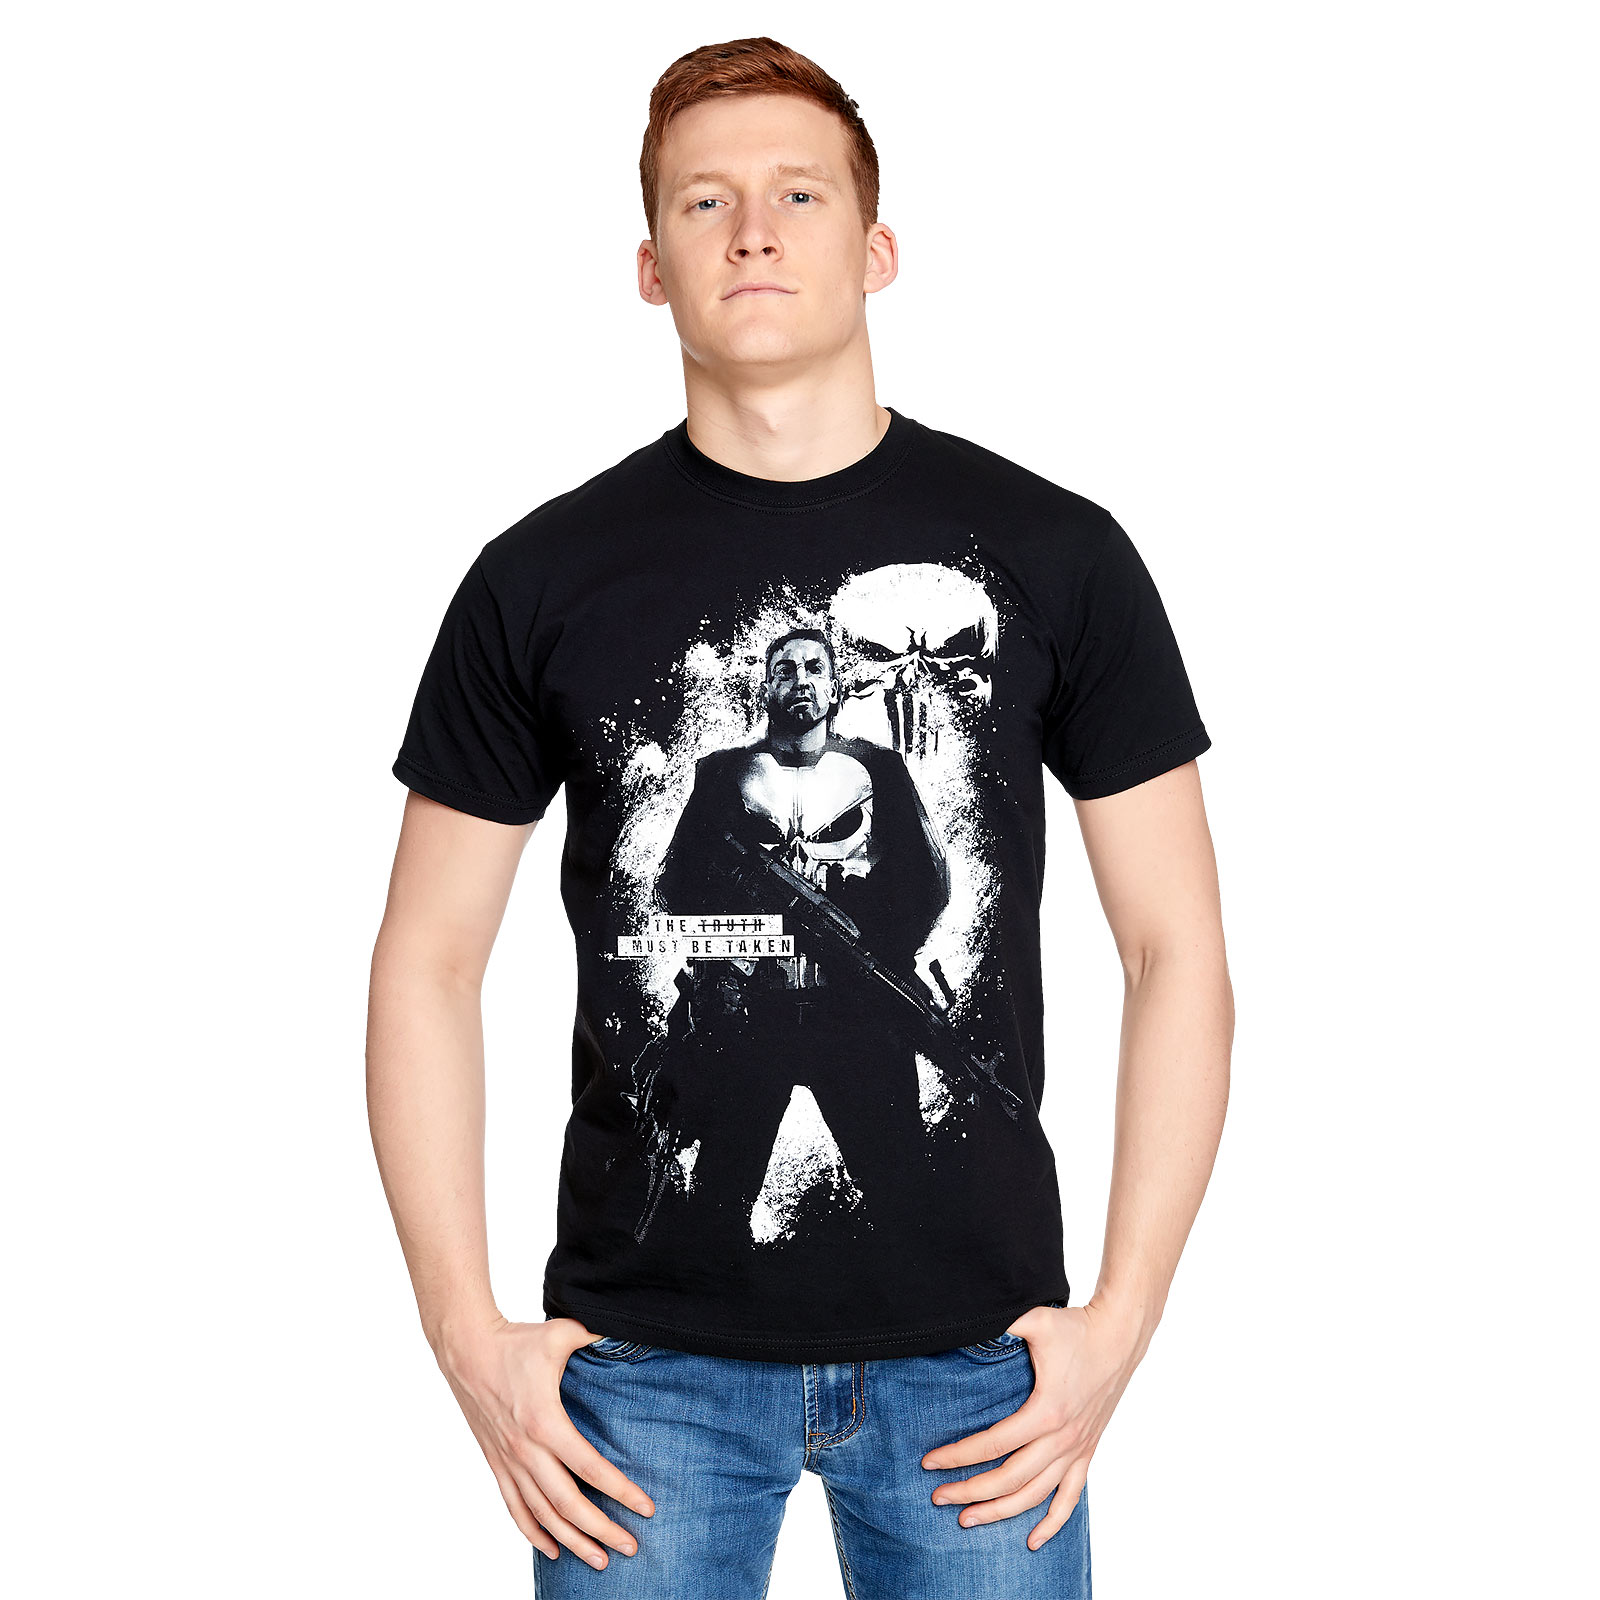 Punisher - The Truth T-Shirt schwarz